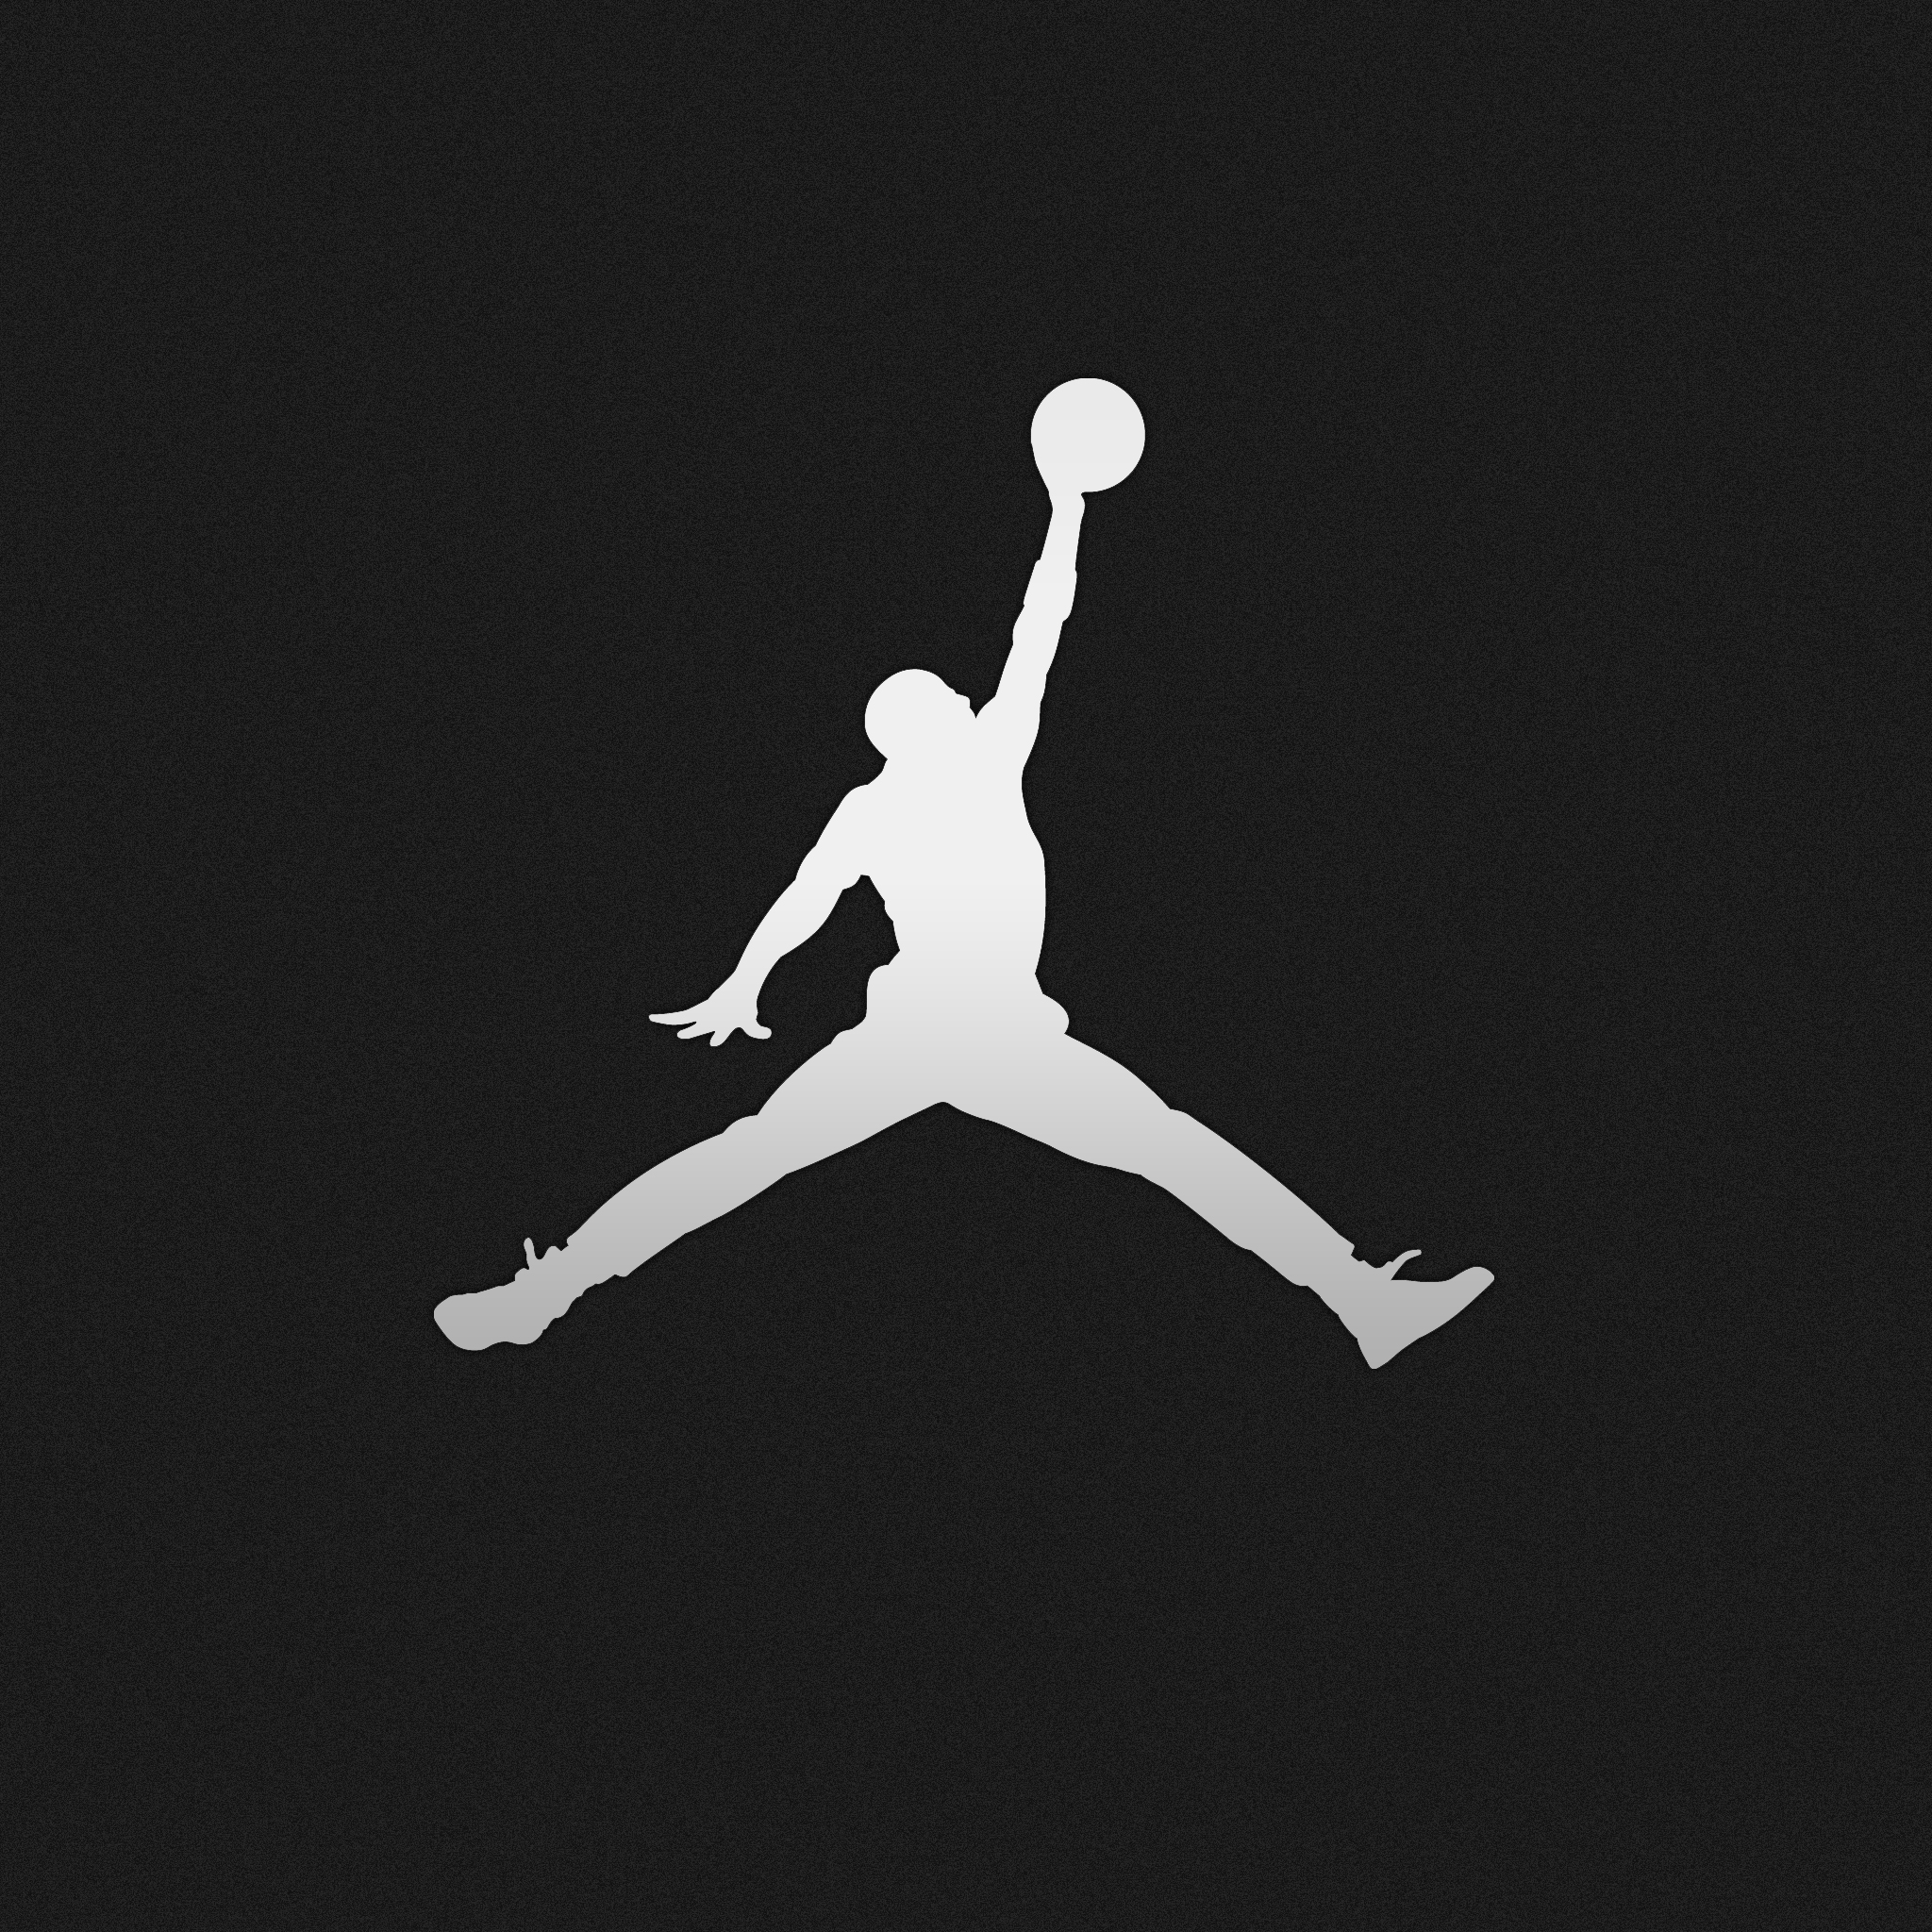 Air Jordan Nike Logo Wallpaper For iPhone